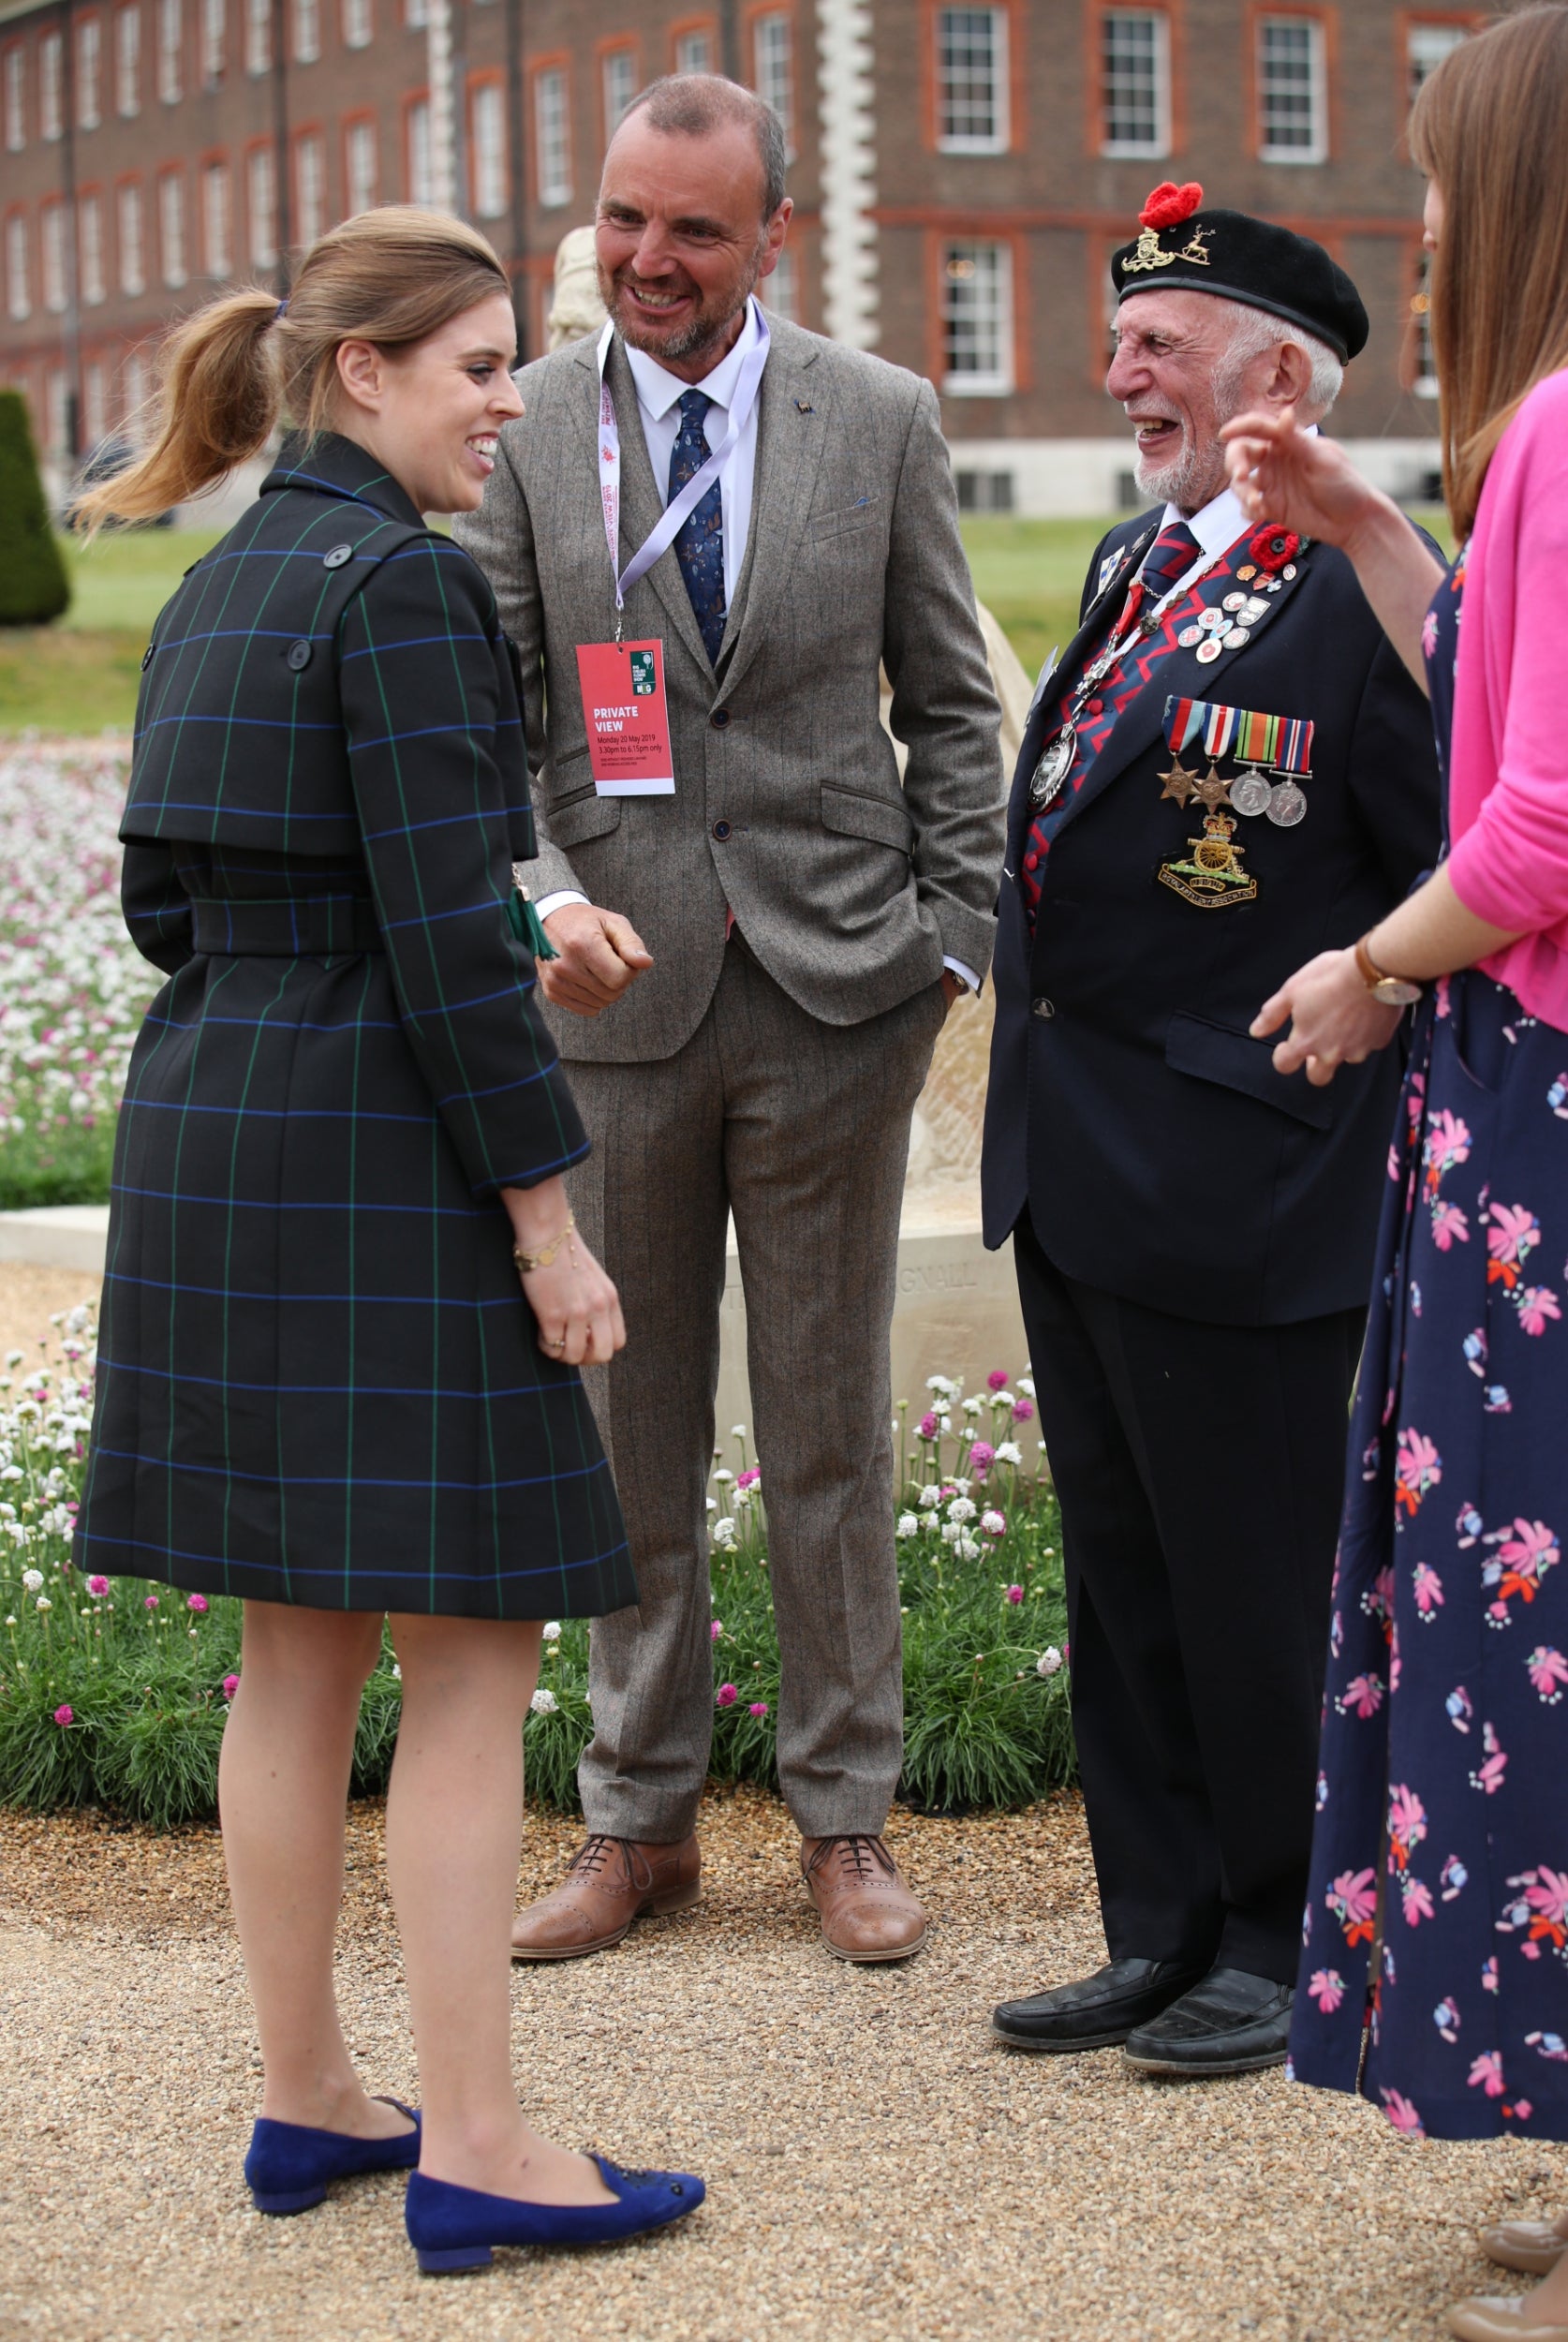 Mr Cattini met Princess Beatrice in 2019